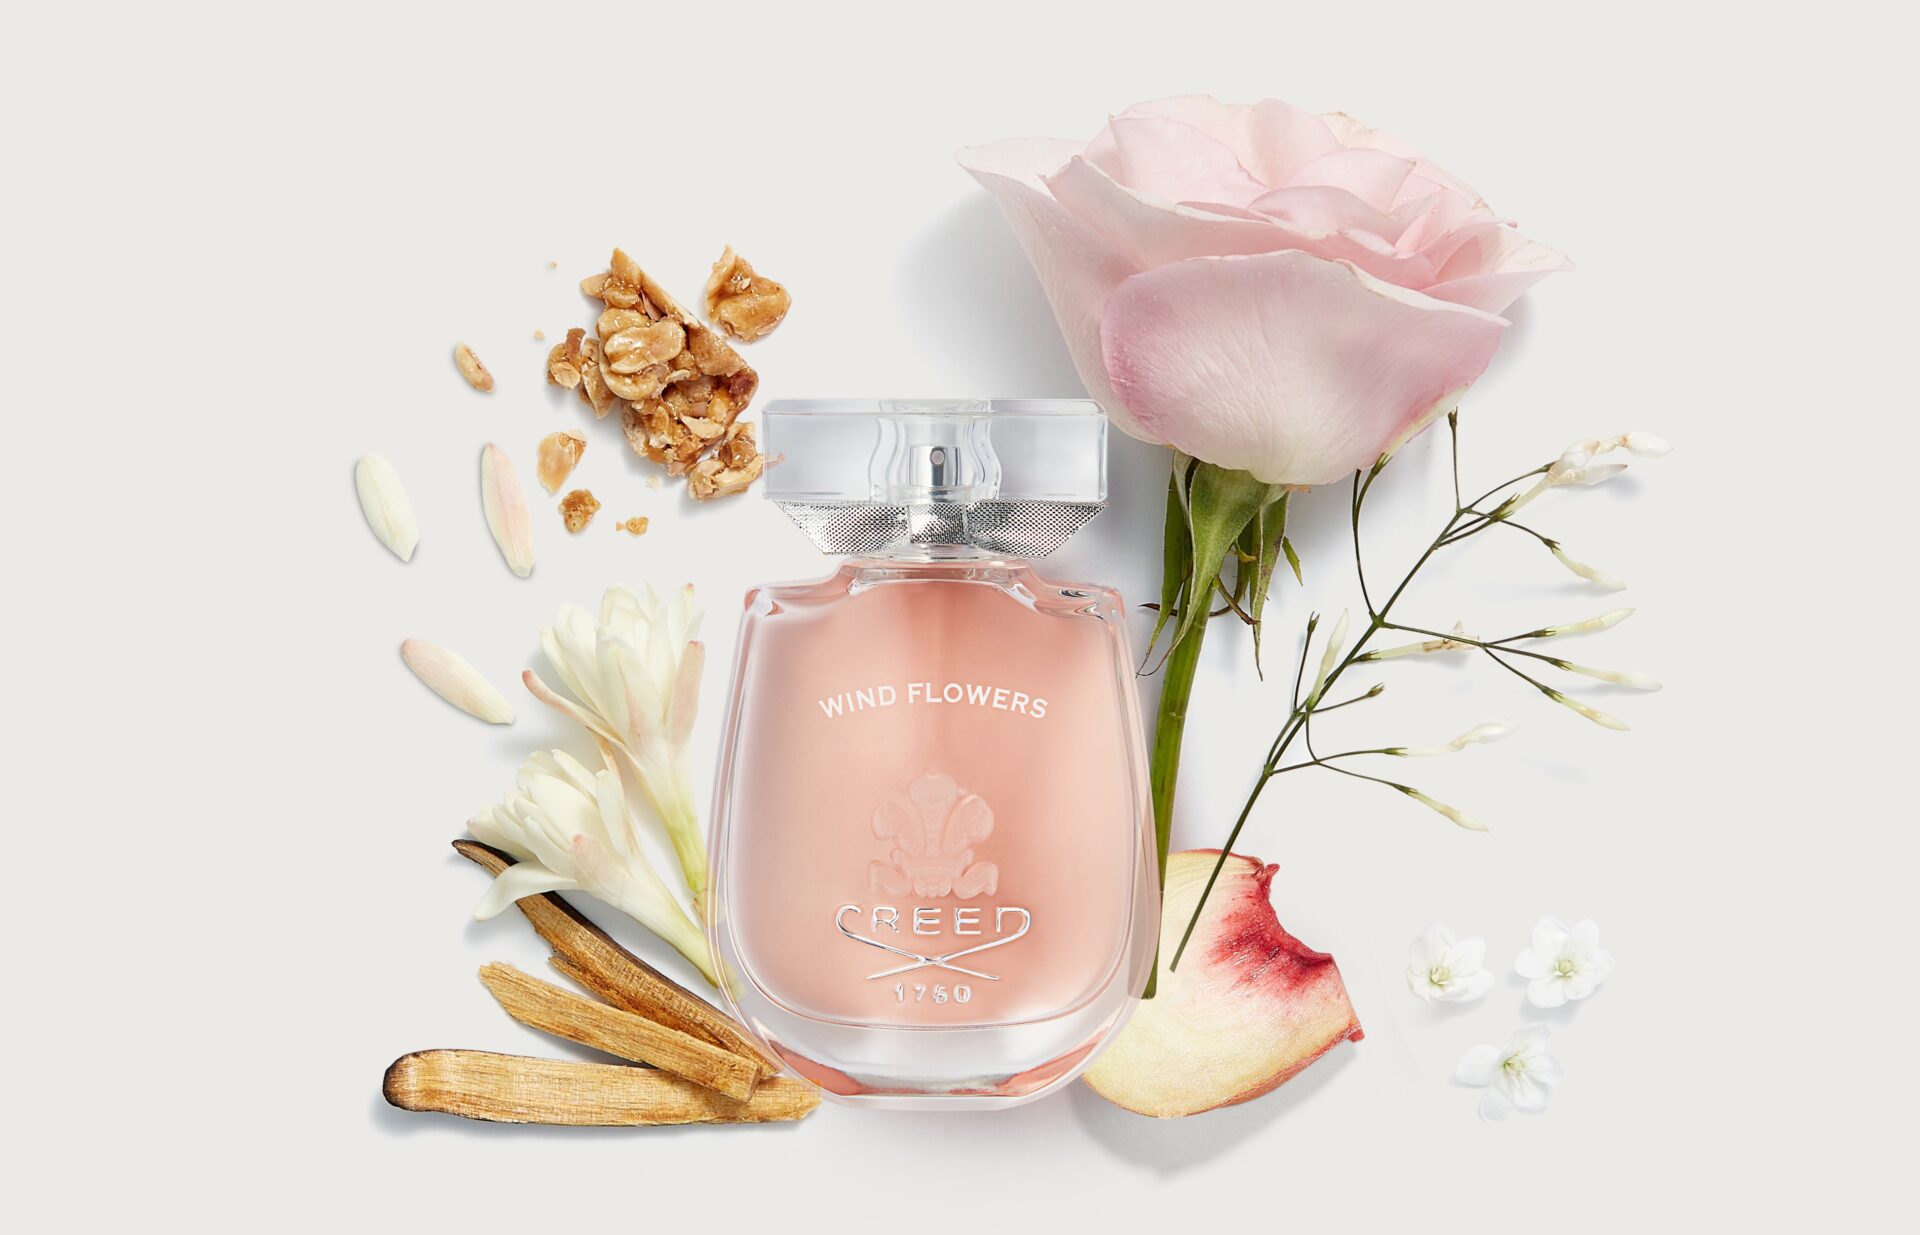 Wind Flowers, la nuova fragranza femminile di Creed